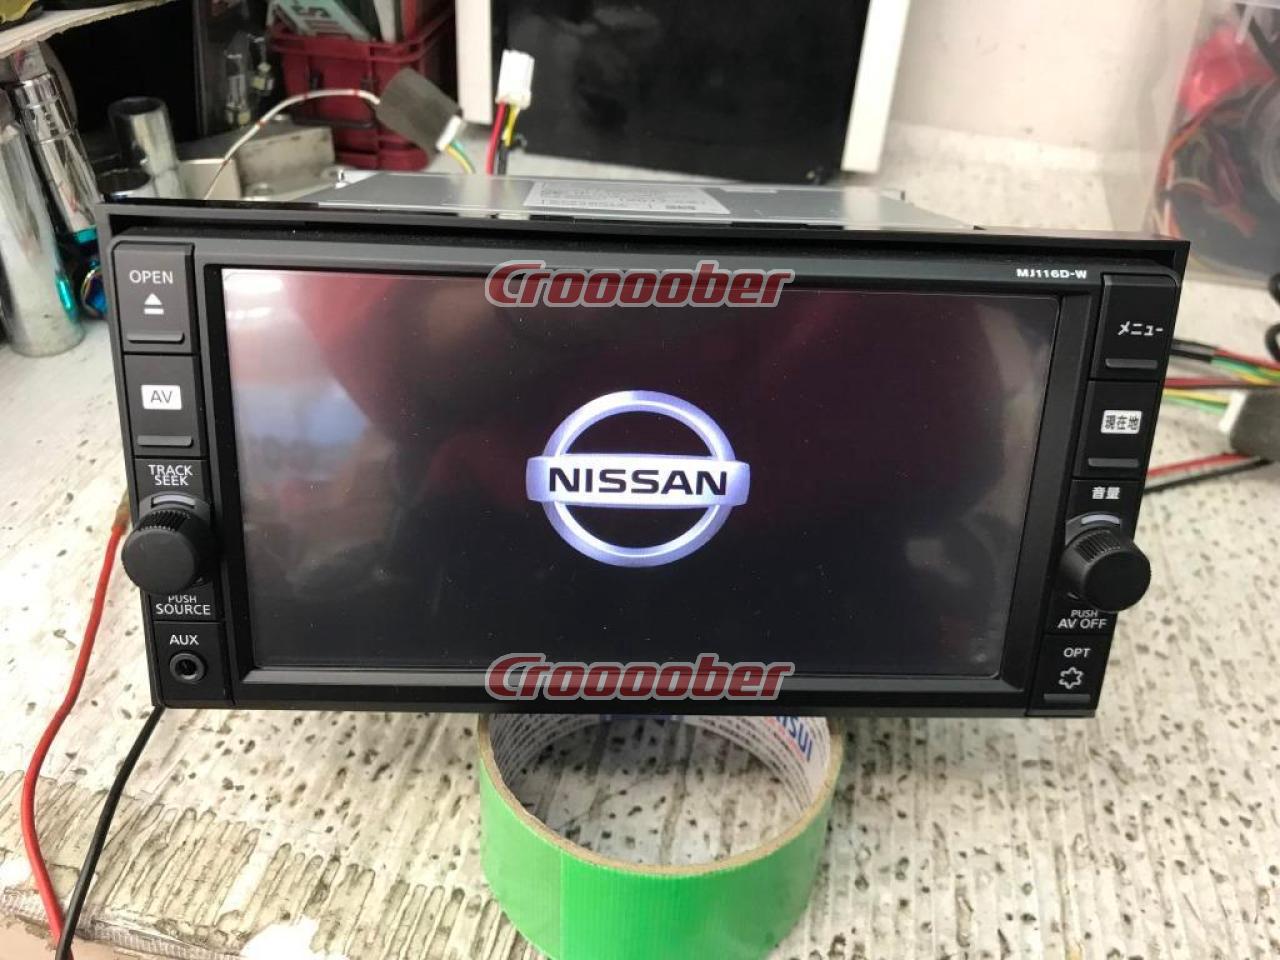 NISSAN MJ116D-W フルセグモデル | カーナビ(地デジ） AV一体メモリー